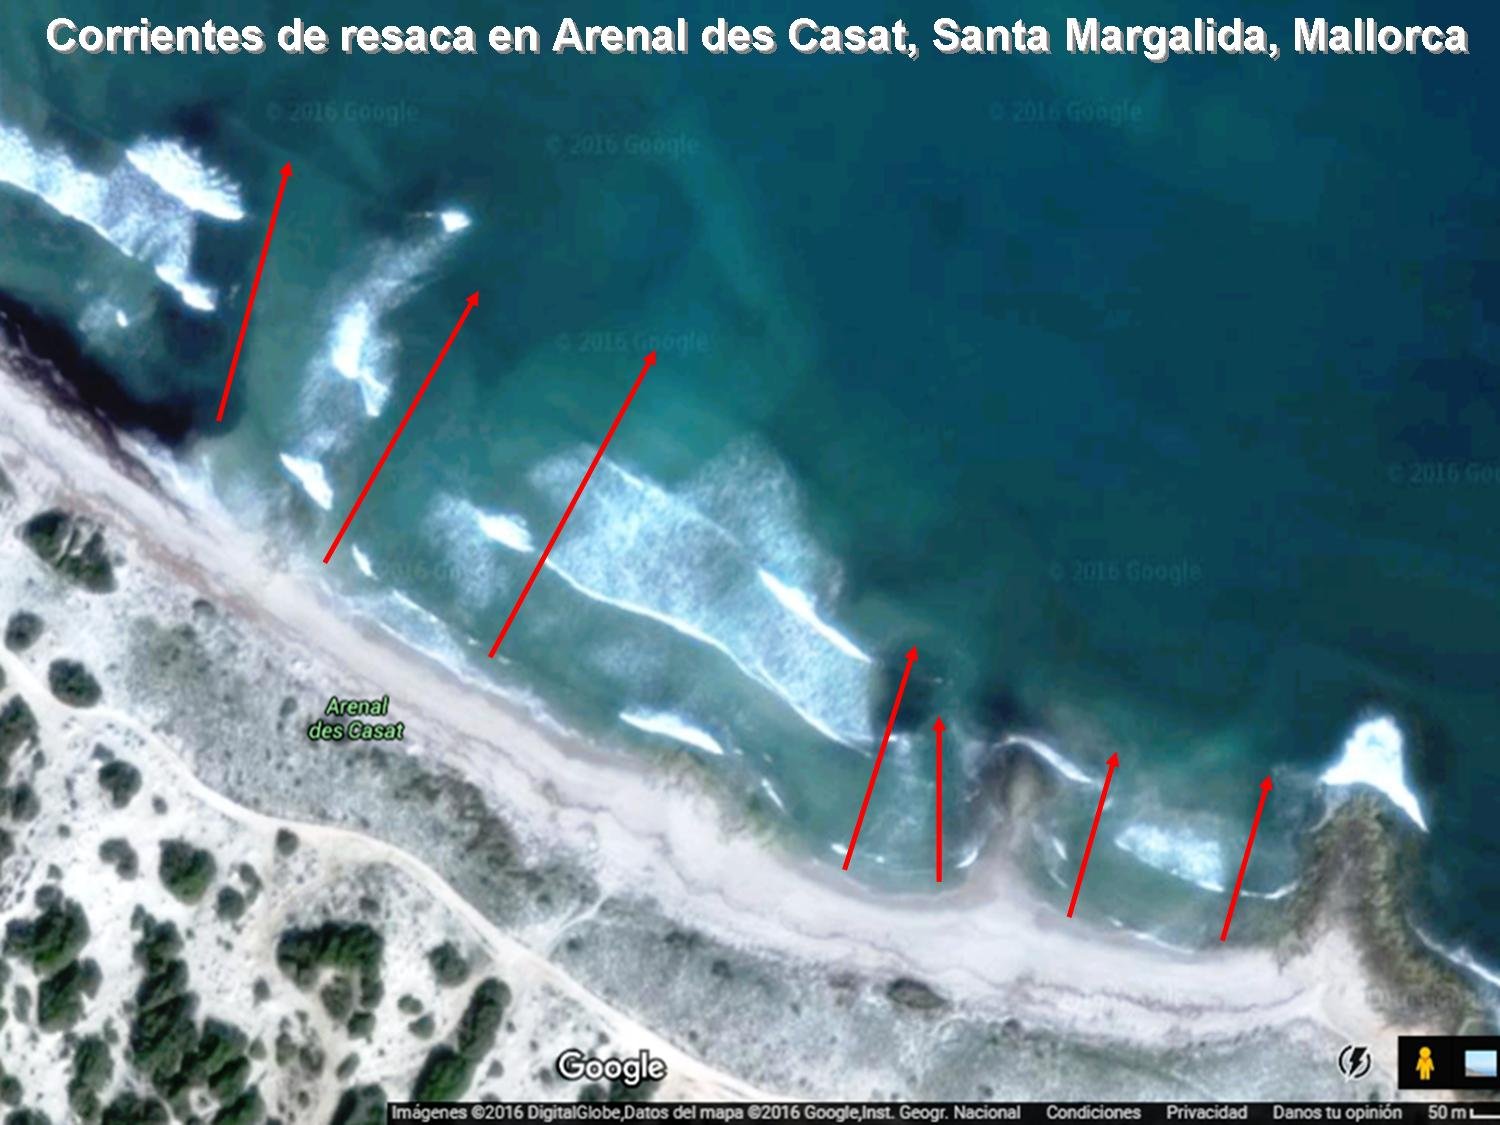 Impactos de las corrientes de resaca en los rescates en playas de Cataluña y Mallorca mediante informes detallados de los socorristas.